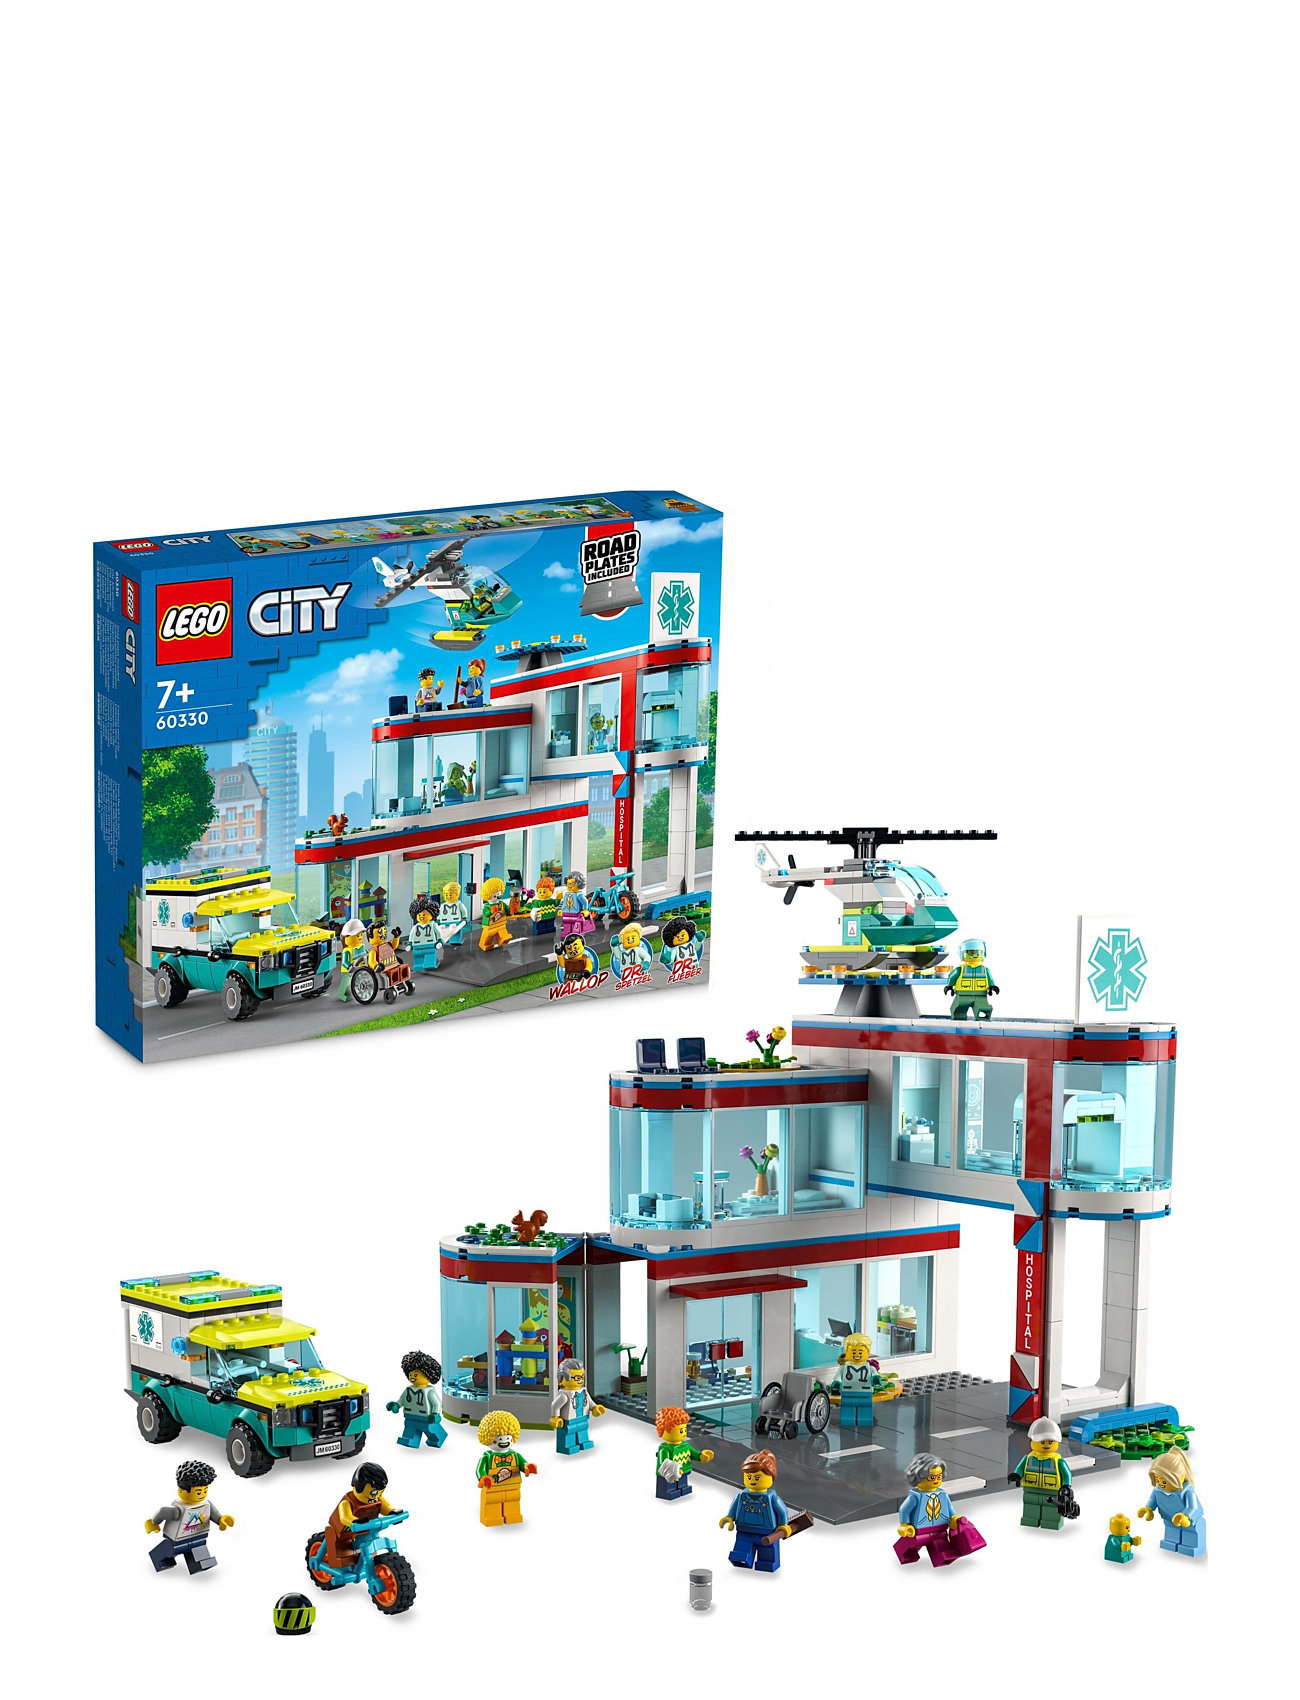 Hospital Set With Ambulance Toy Truck Toys Lego Toys Lego city Multi/patterned LEGO